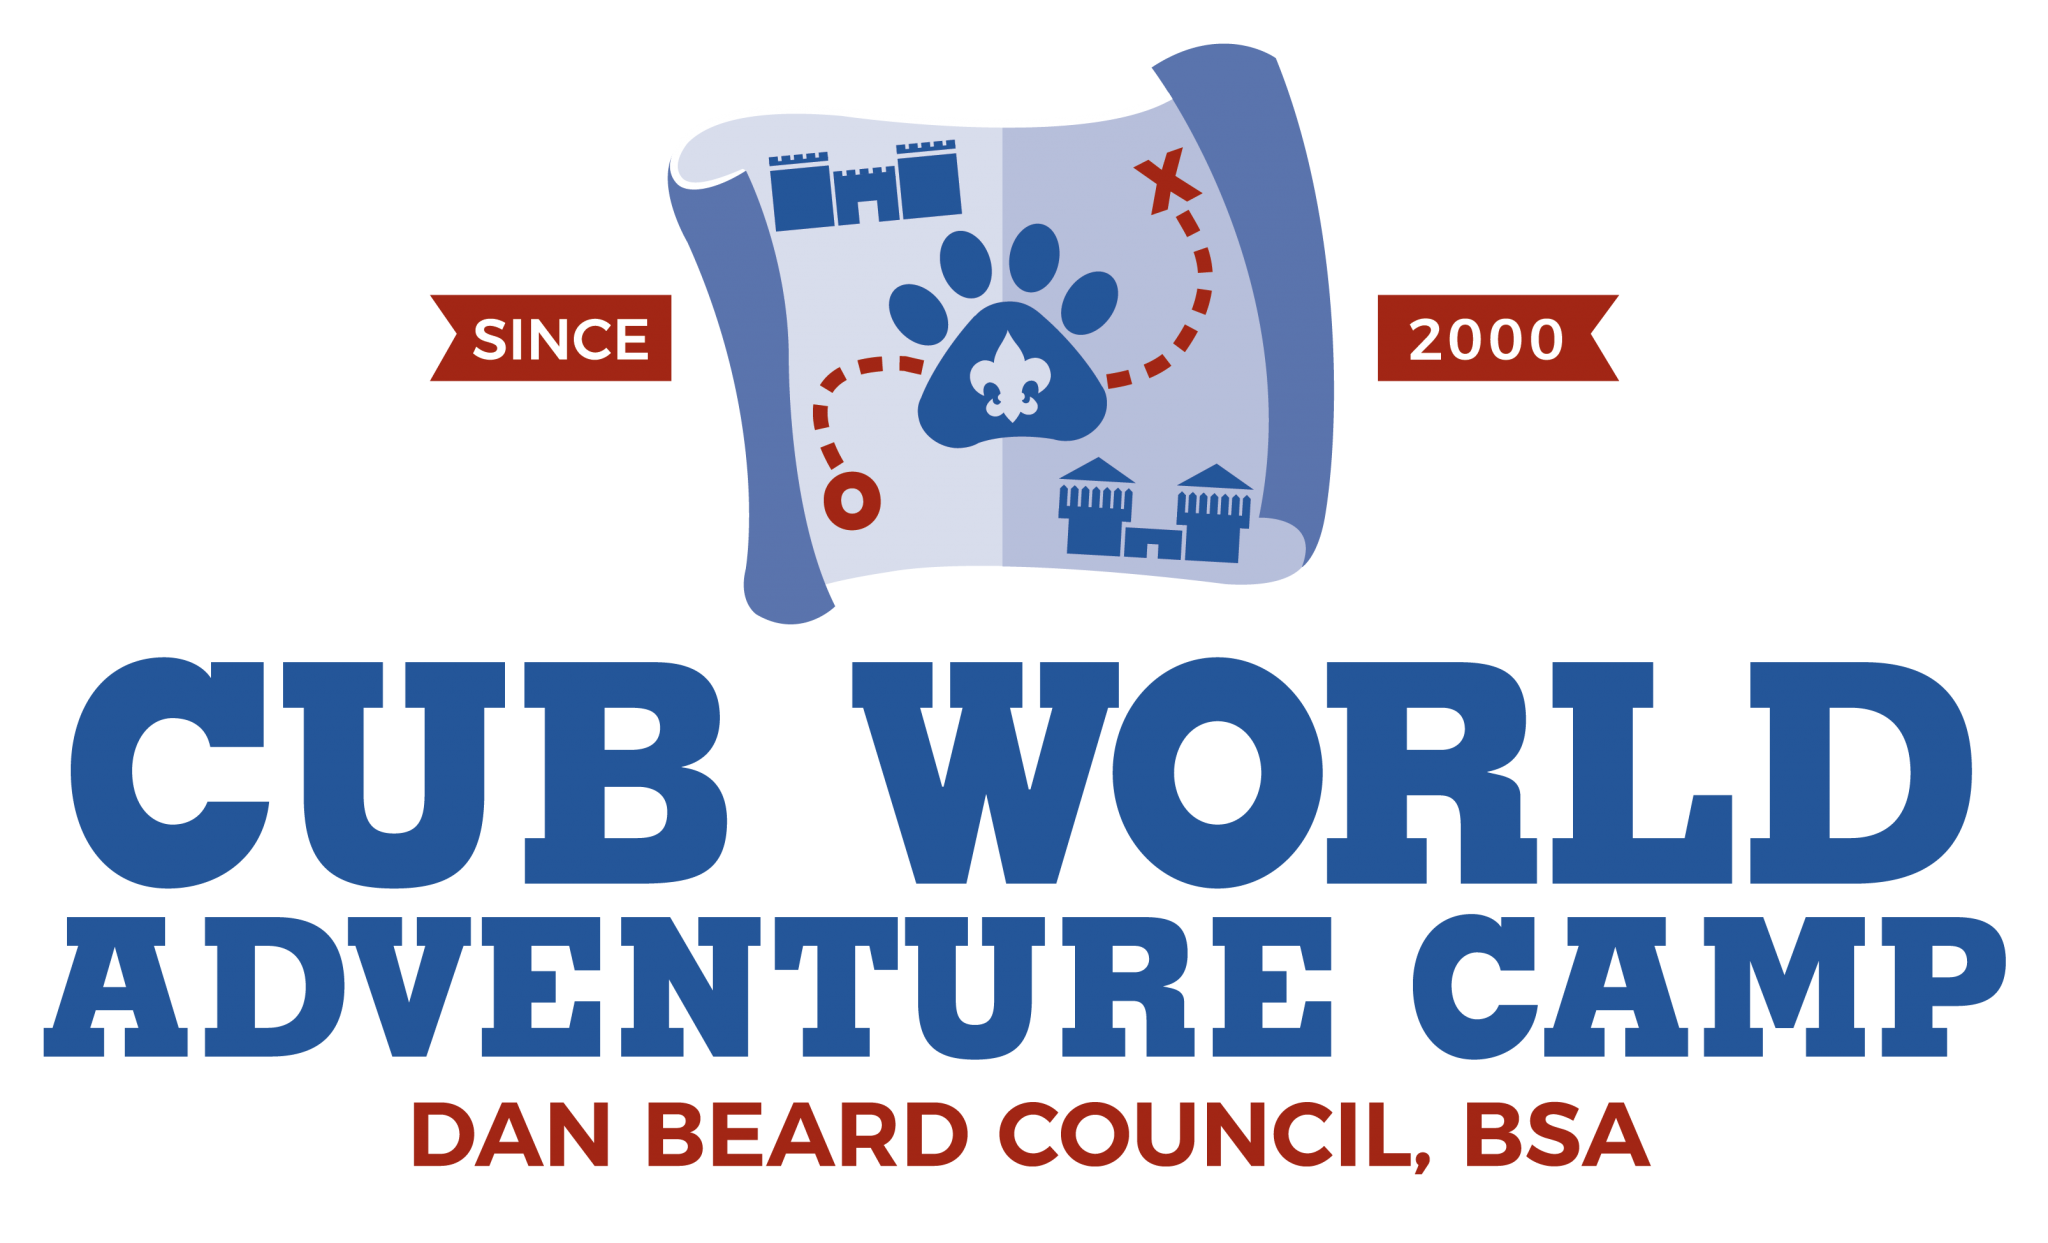 Cub Scout Camping Boy Scouts Of America Dan Beard Council